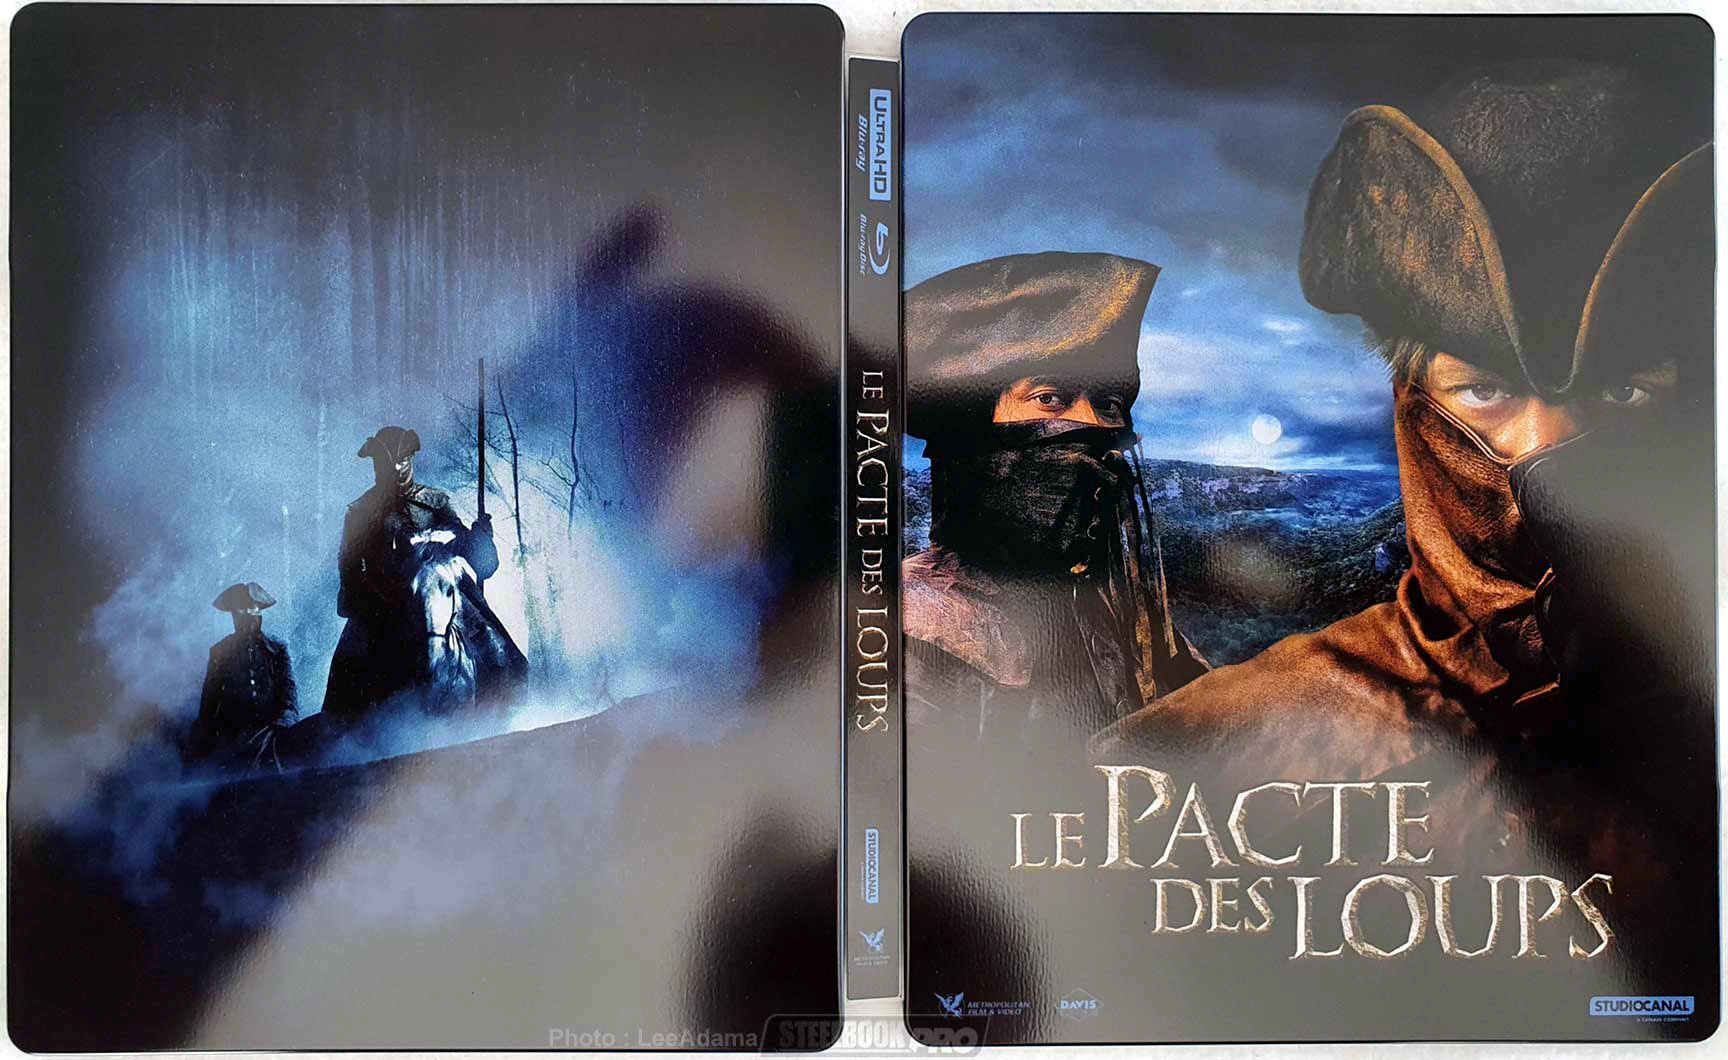 Le-Pacte-des-Loups-steelbook-2-1.jpg